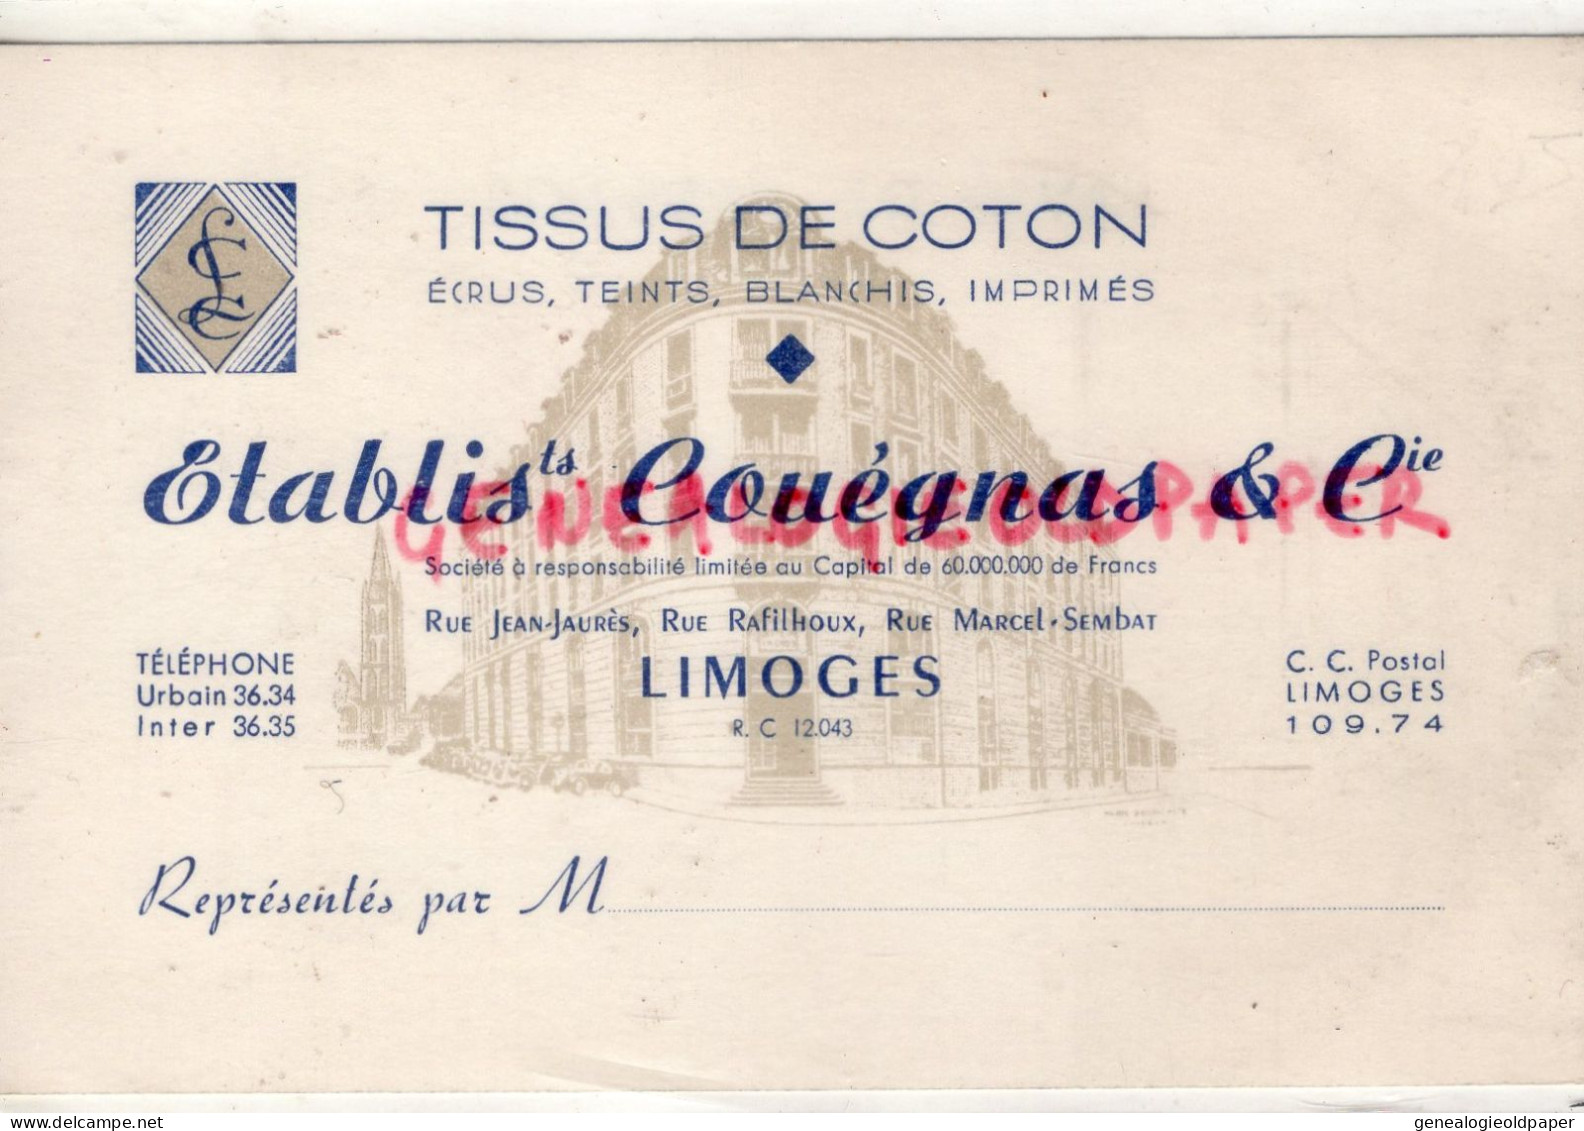 87-LIMOGES-MAGASIN VETEMENTS TISSUS COTON- COUEGNAS-RUE JEAN JAURES-RAFILHOUX-MARCEL SEMBLAT-CARTE PRECUSEUR - Kleidung & Textil